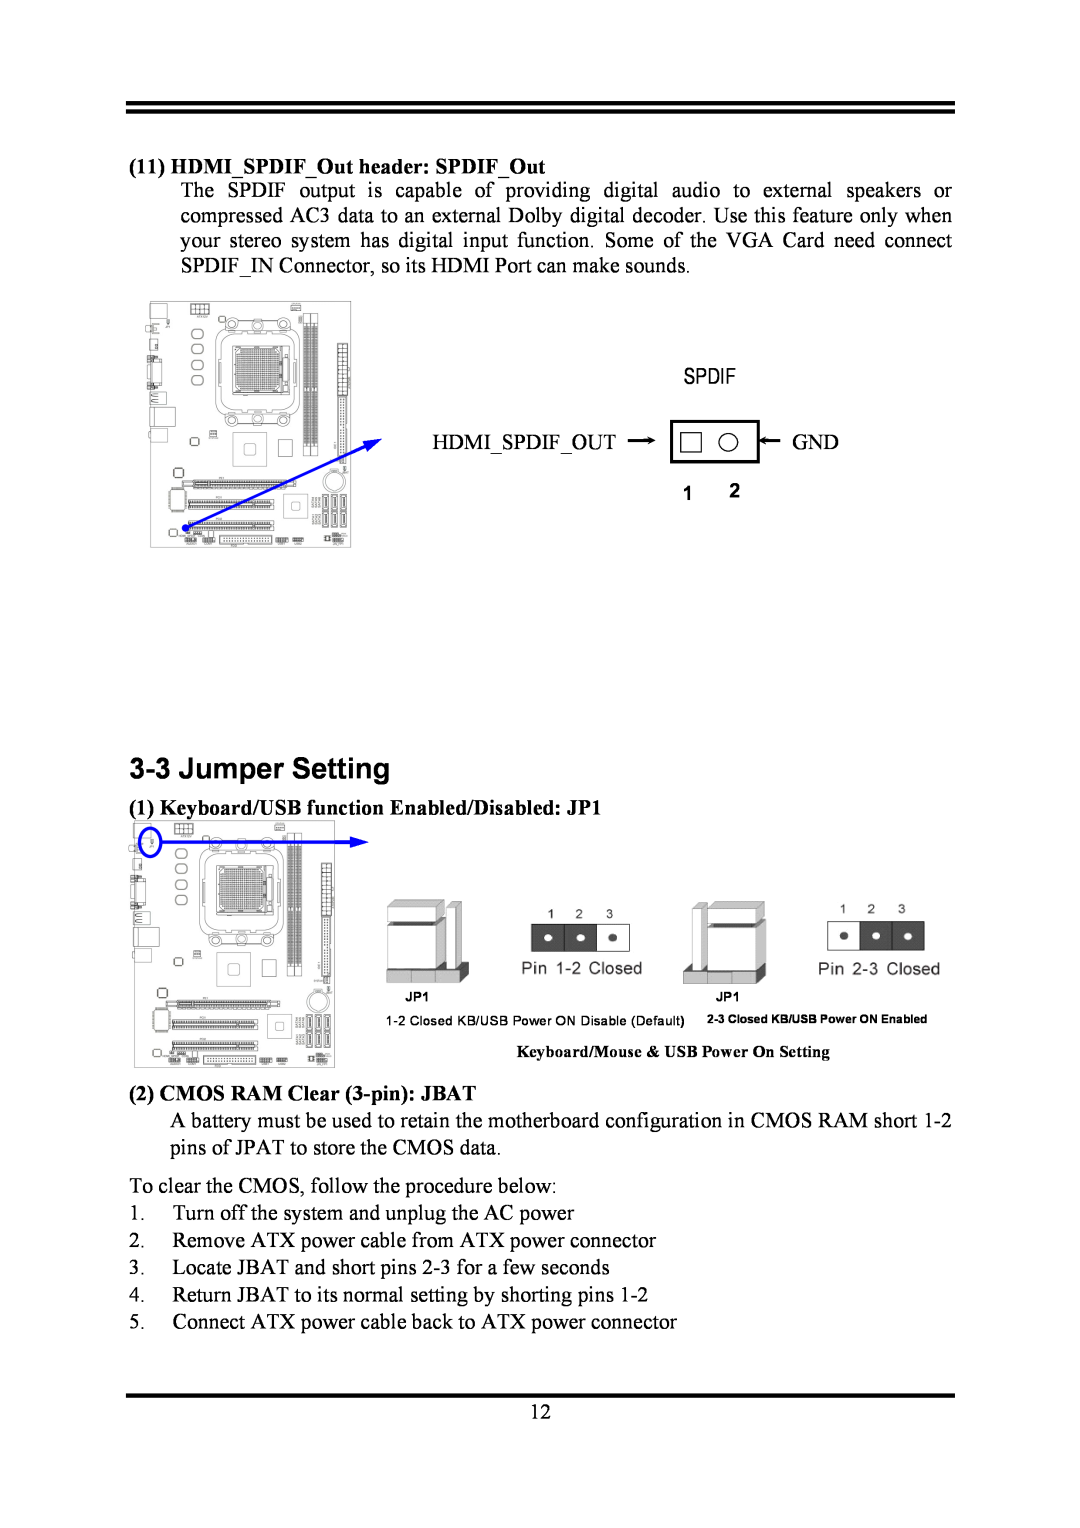 AMD KM780V user manual Jumper Setting, HDMISPDIFOut header SPDIFOut, Keyboard/USB function Enabled/Disabled JP1 